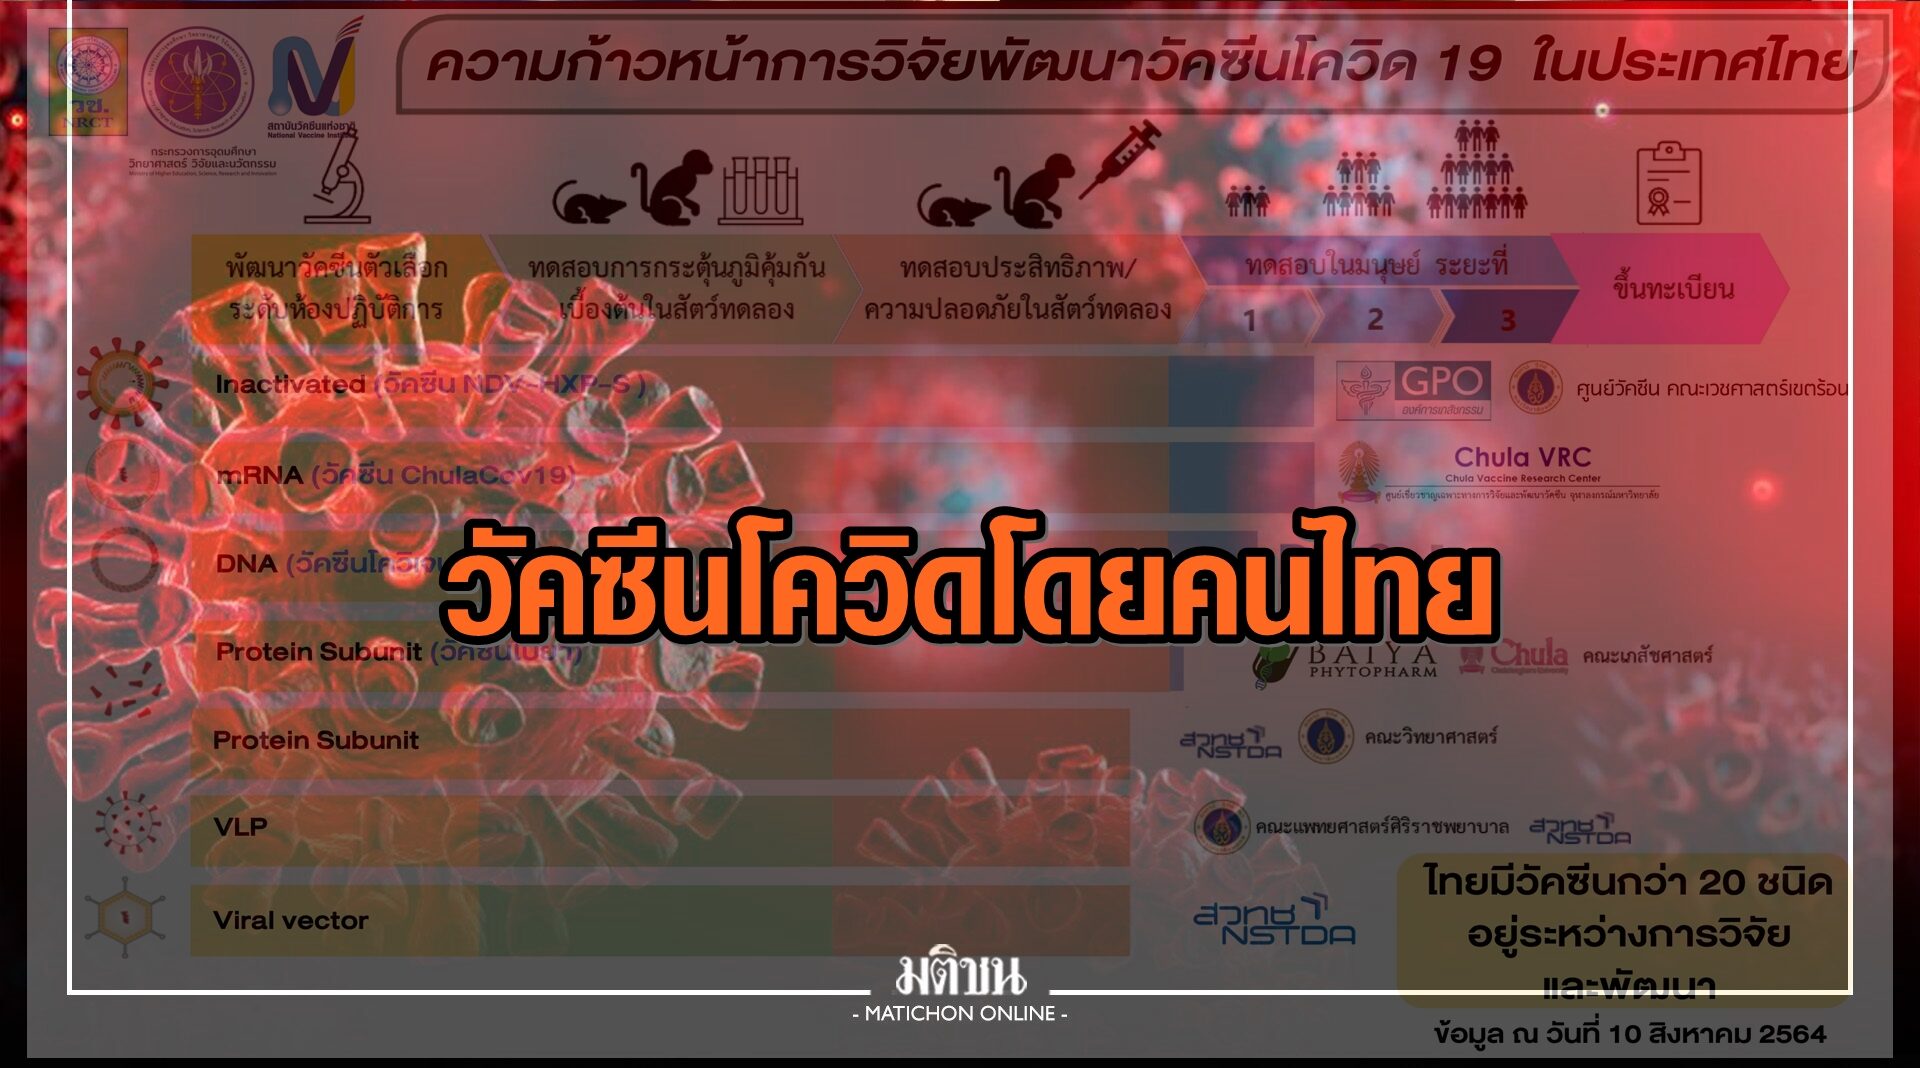 "อว." เผยความคืบหน้าการวิจัยวัคซีนโควิดโดยนักวิจัยไทย